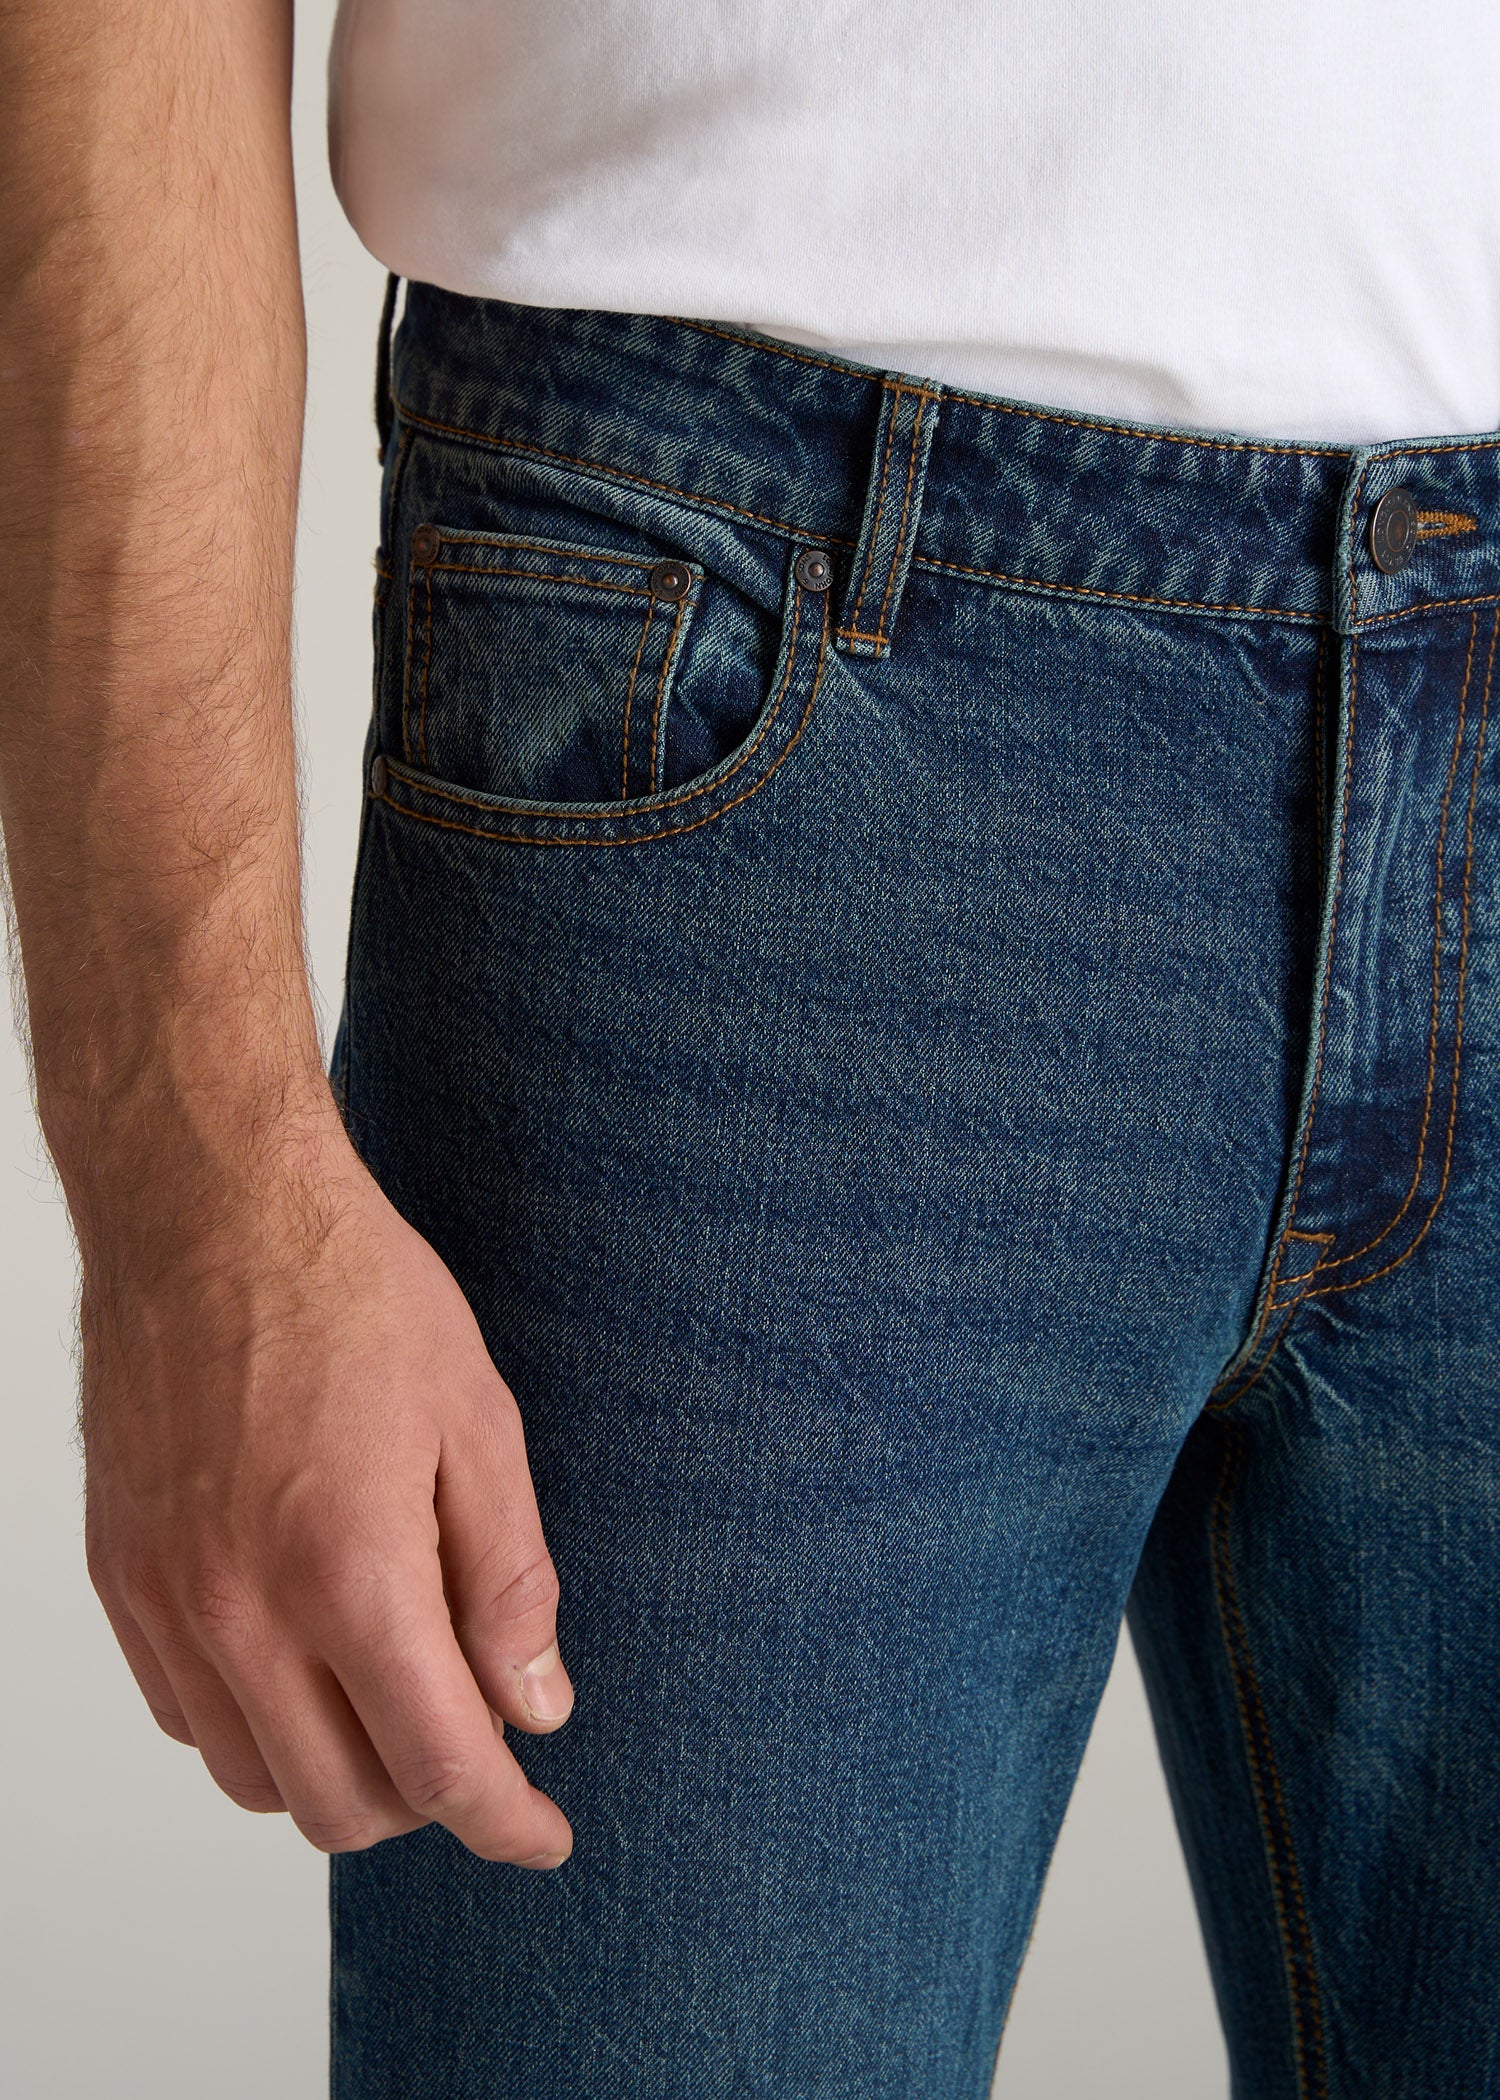     American-Tall-Men-Slim-Taper-Fit-Carman-Jeans-Machine-Blue-pocket